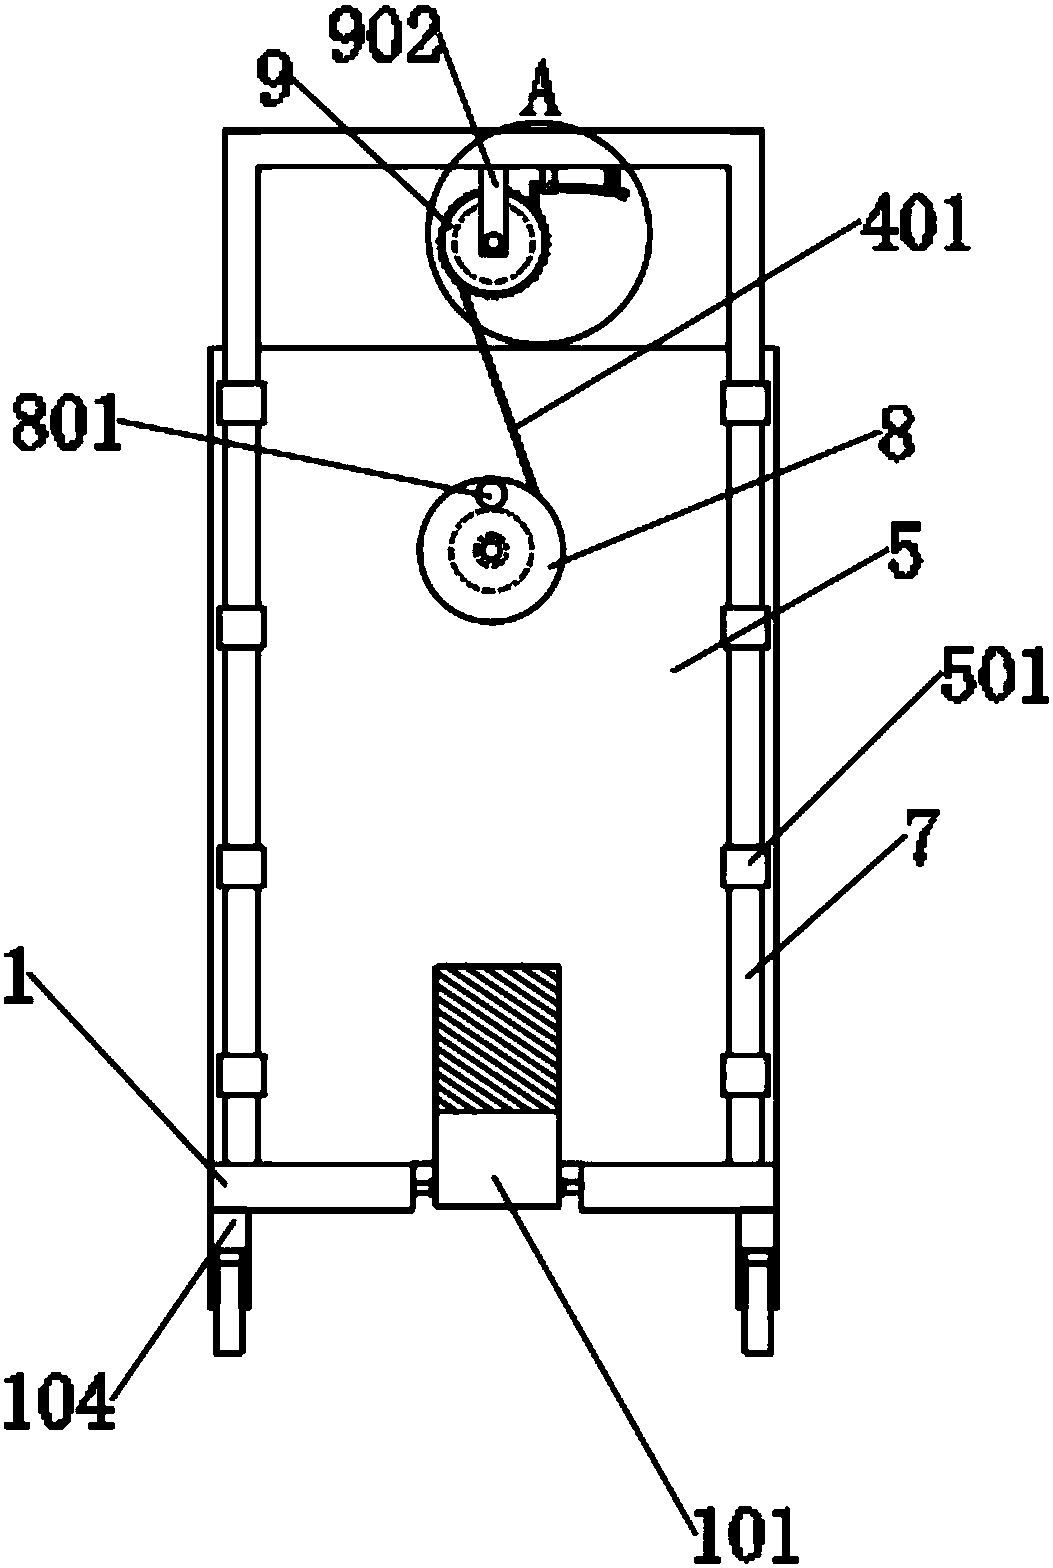 Cart type discharging device